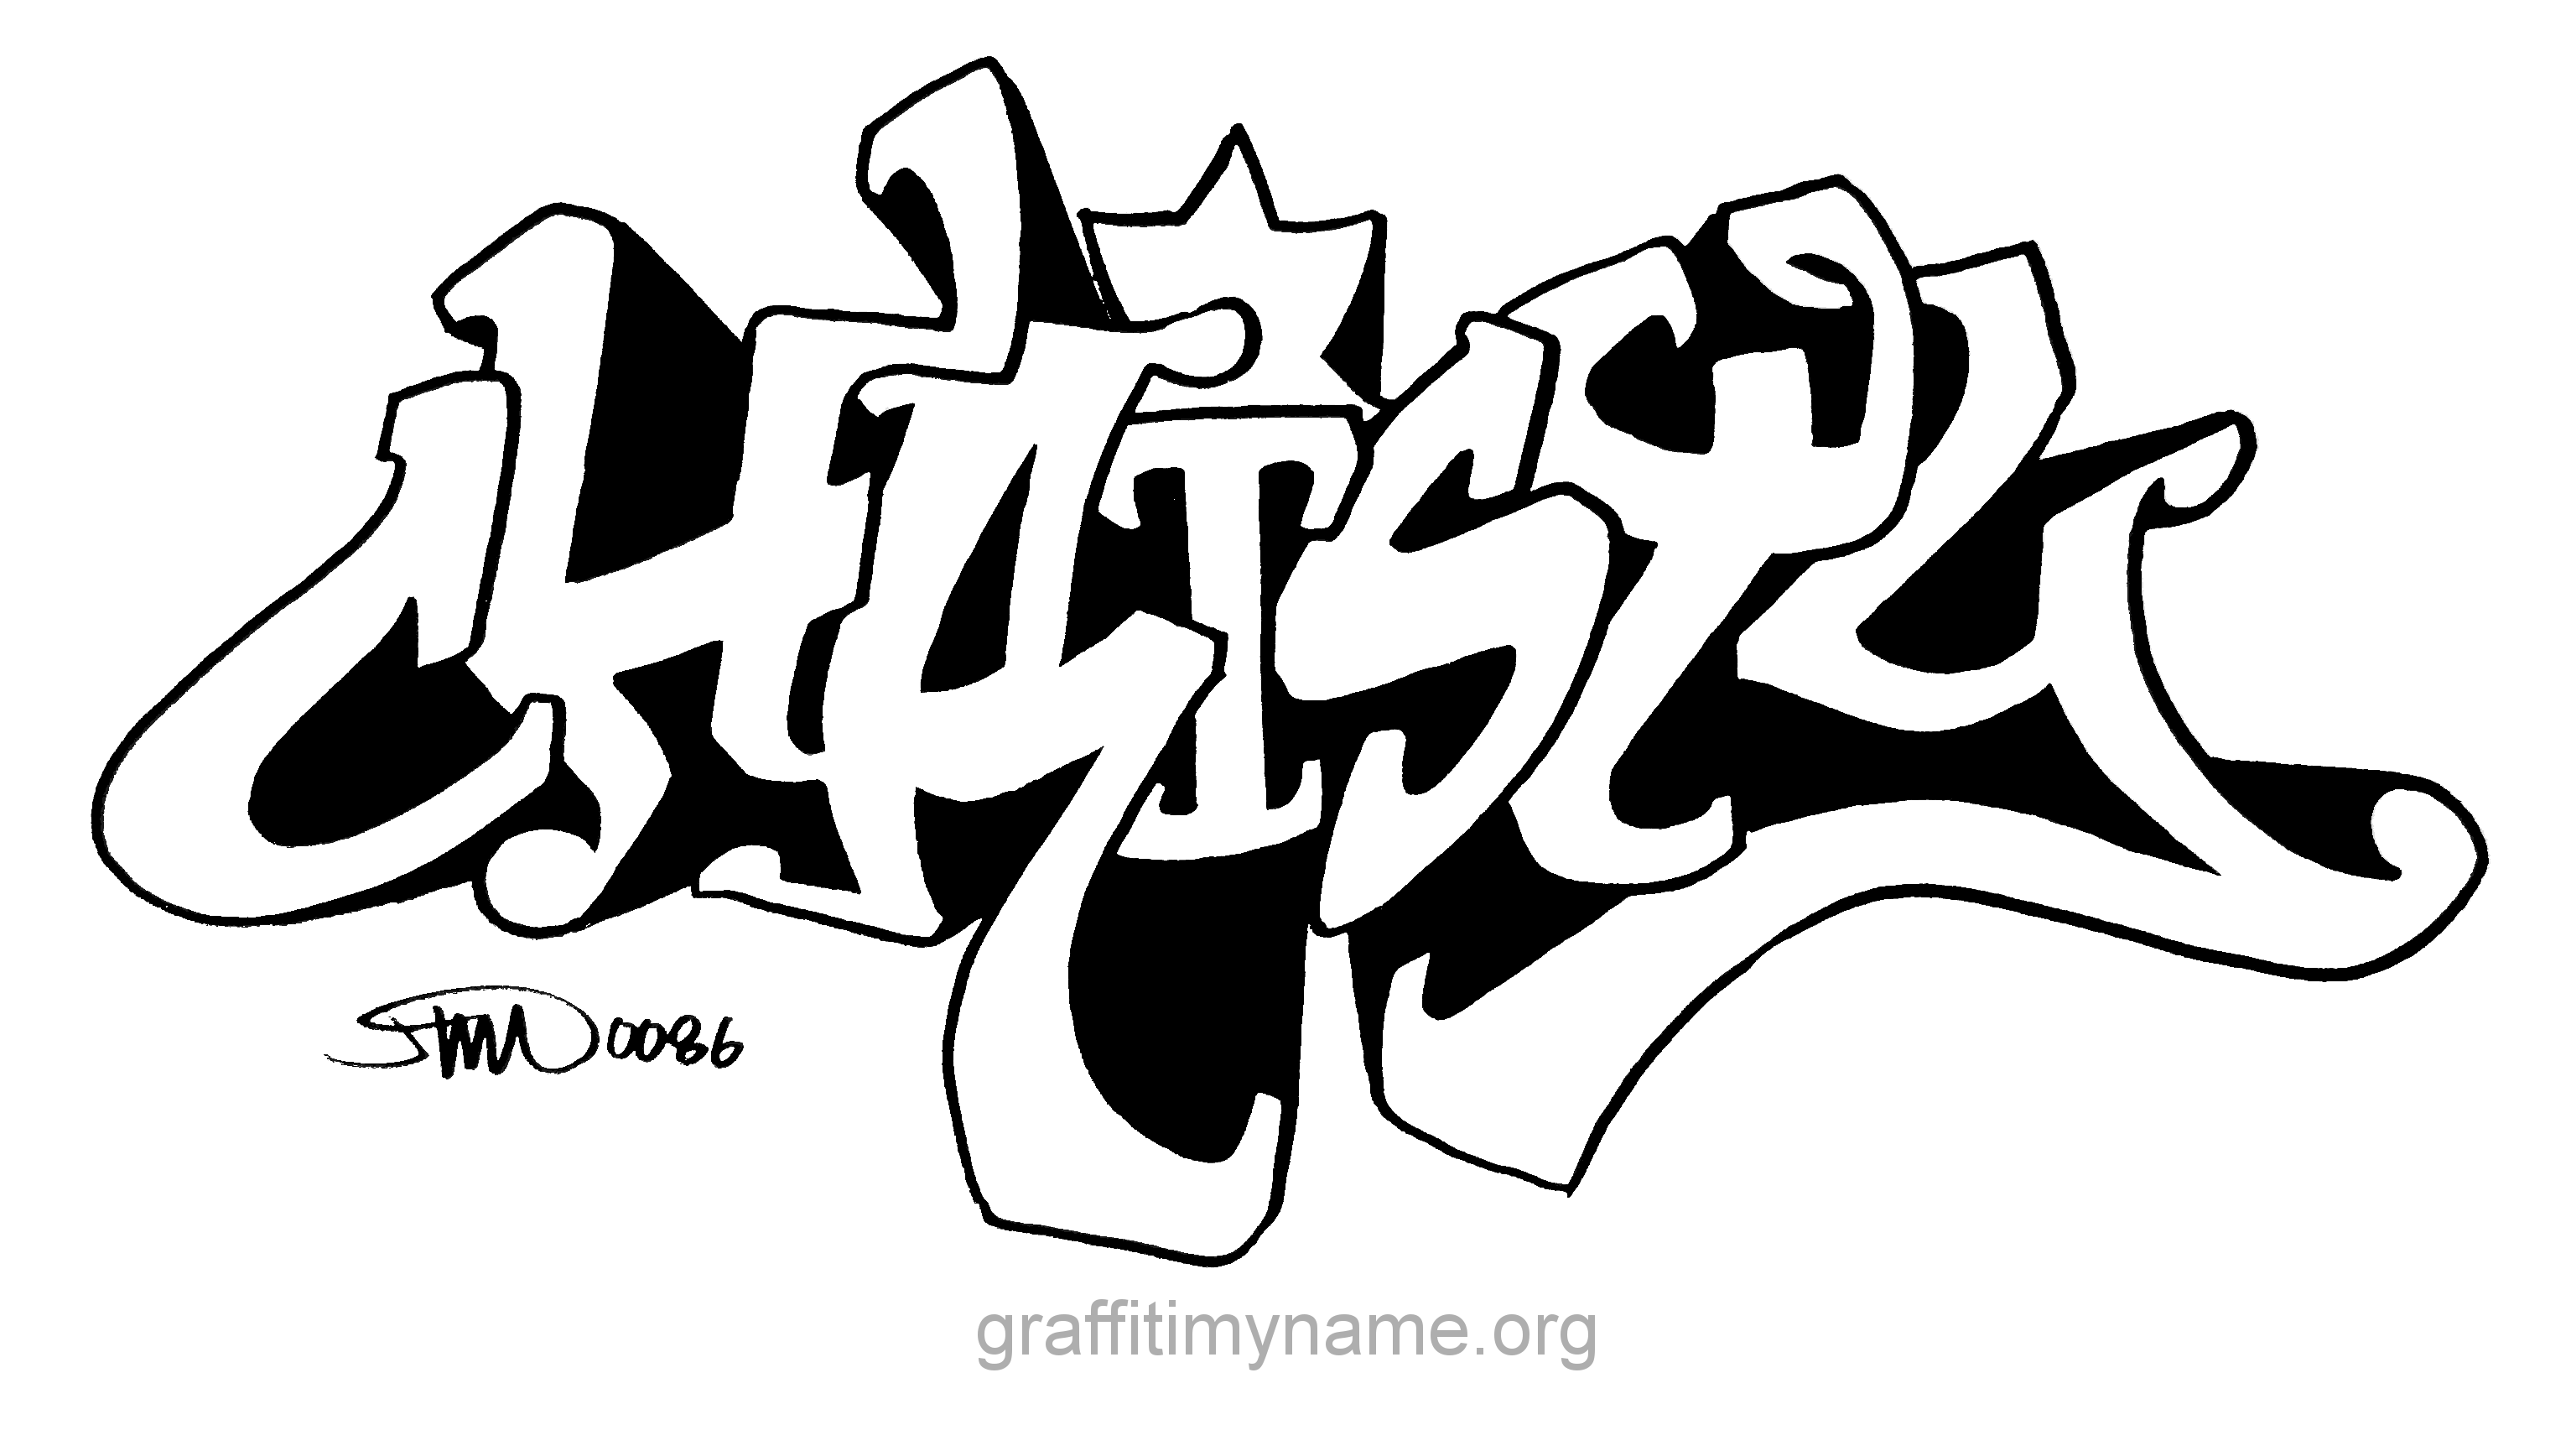 Тег name. Граффити раскраска. Граффити эскизы. Раскраска в стиле граффити. В стиле граффити.